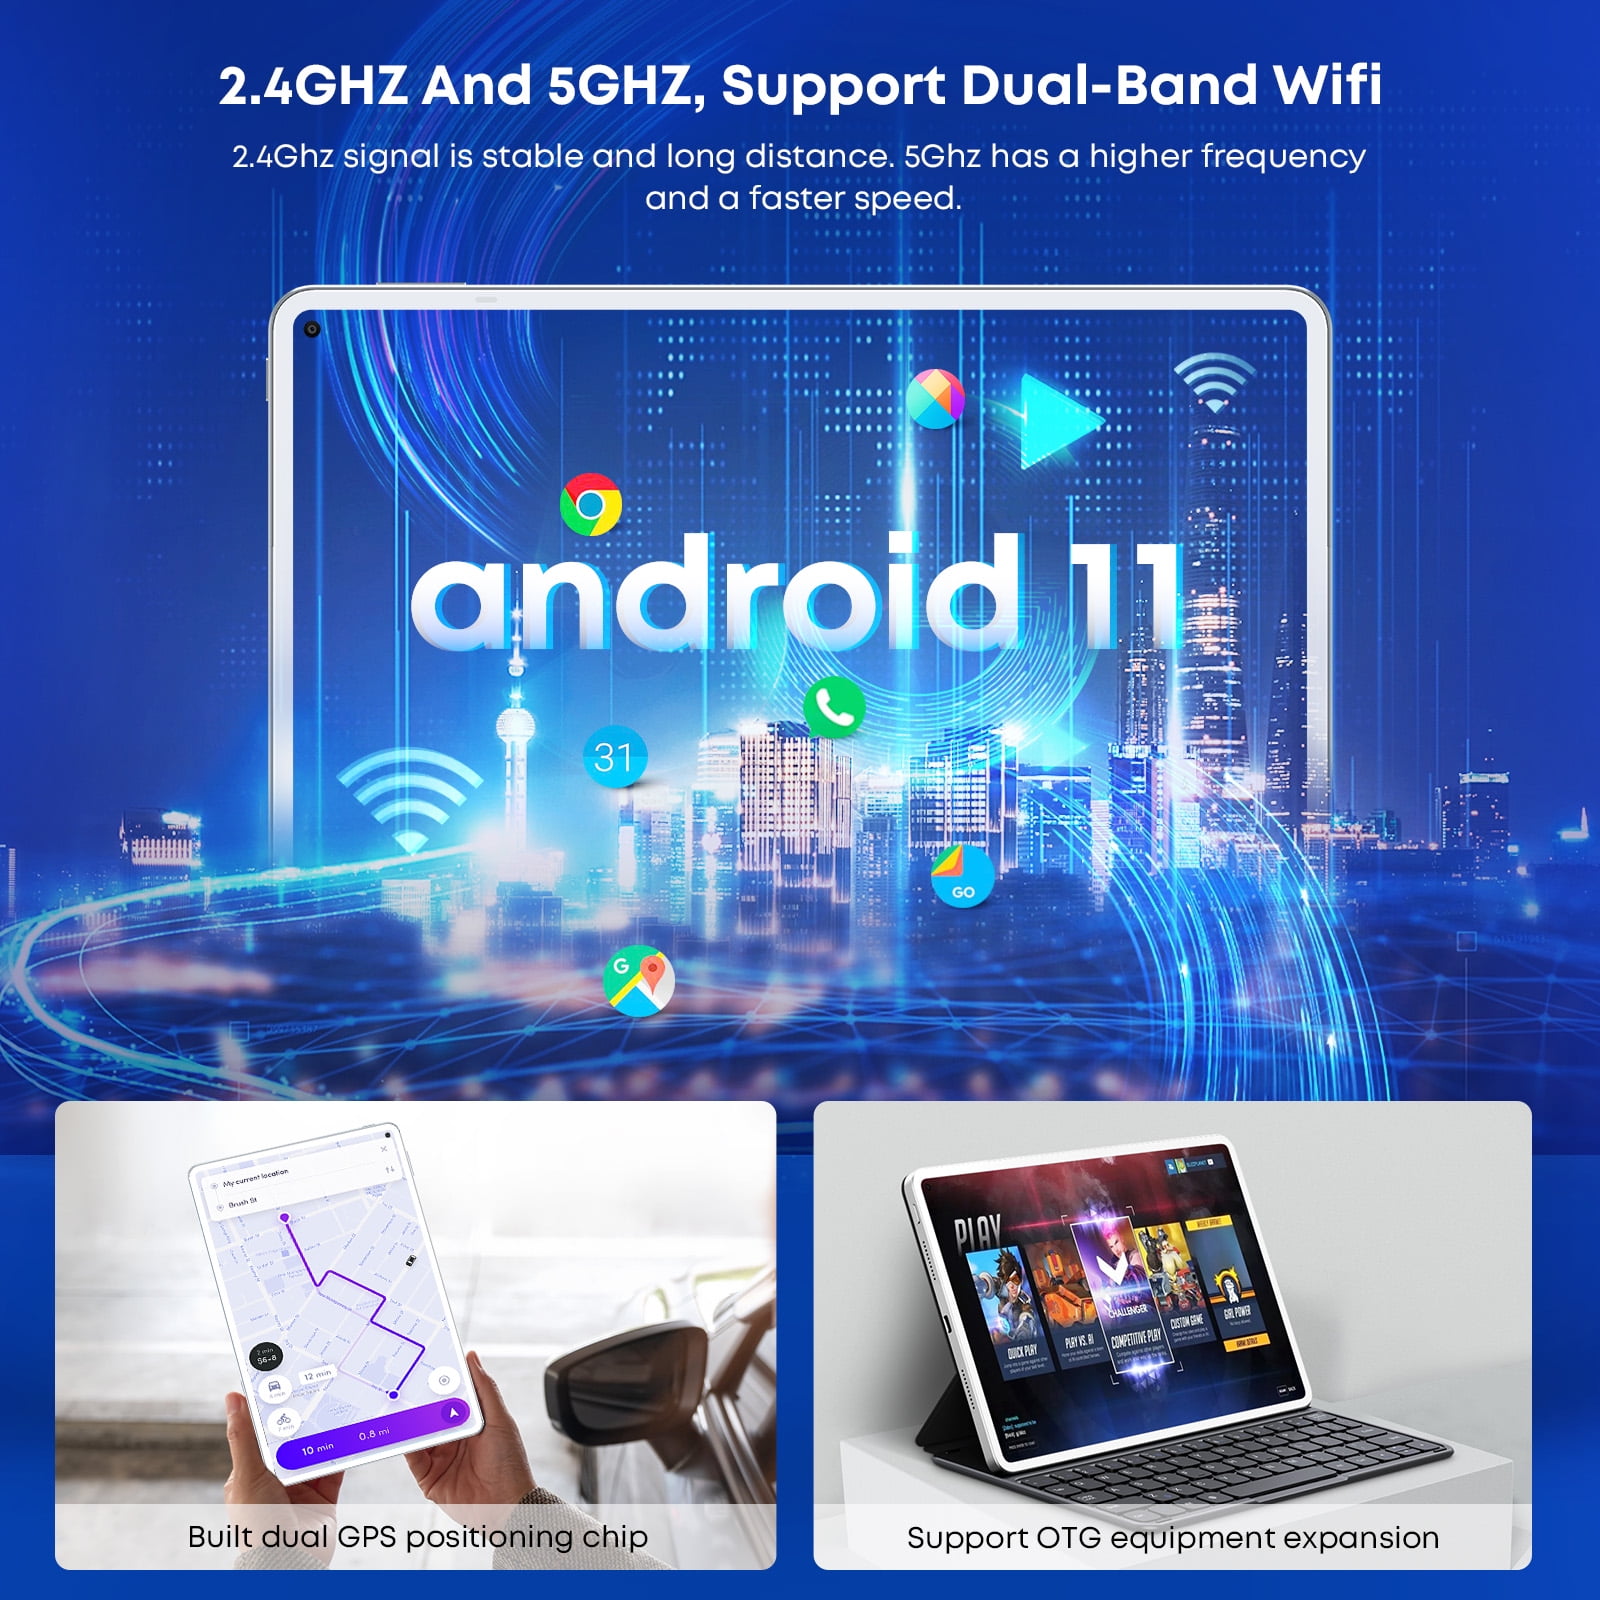 5G WiFi Tablette PC 2K,MT8789V 2.0 Ghz,2560 Argent 1600,OTG/GPS/BT5.0/Type C,7000mAh CHUWI Tablette Tactile 10.8 Pouces Hipad Pro,8Go RAM+128Go ROM,4G LTE Tablette Android 11,Dual SIM 